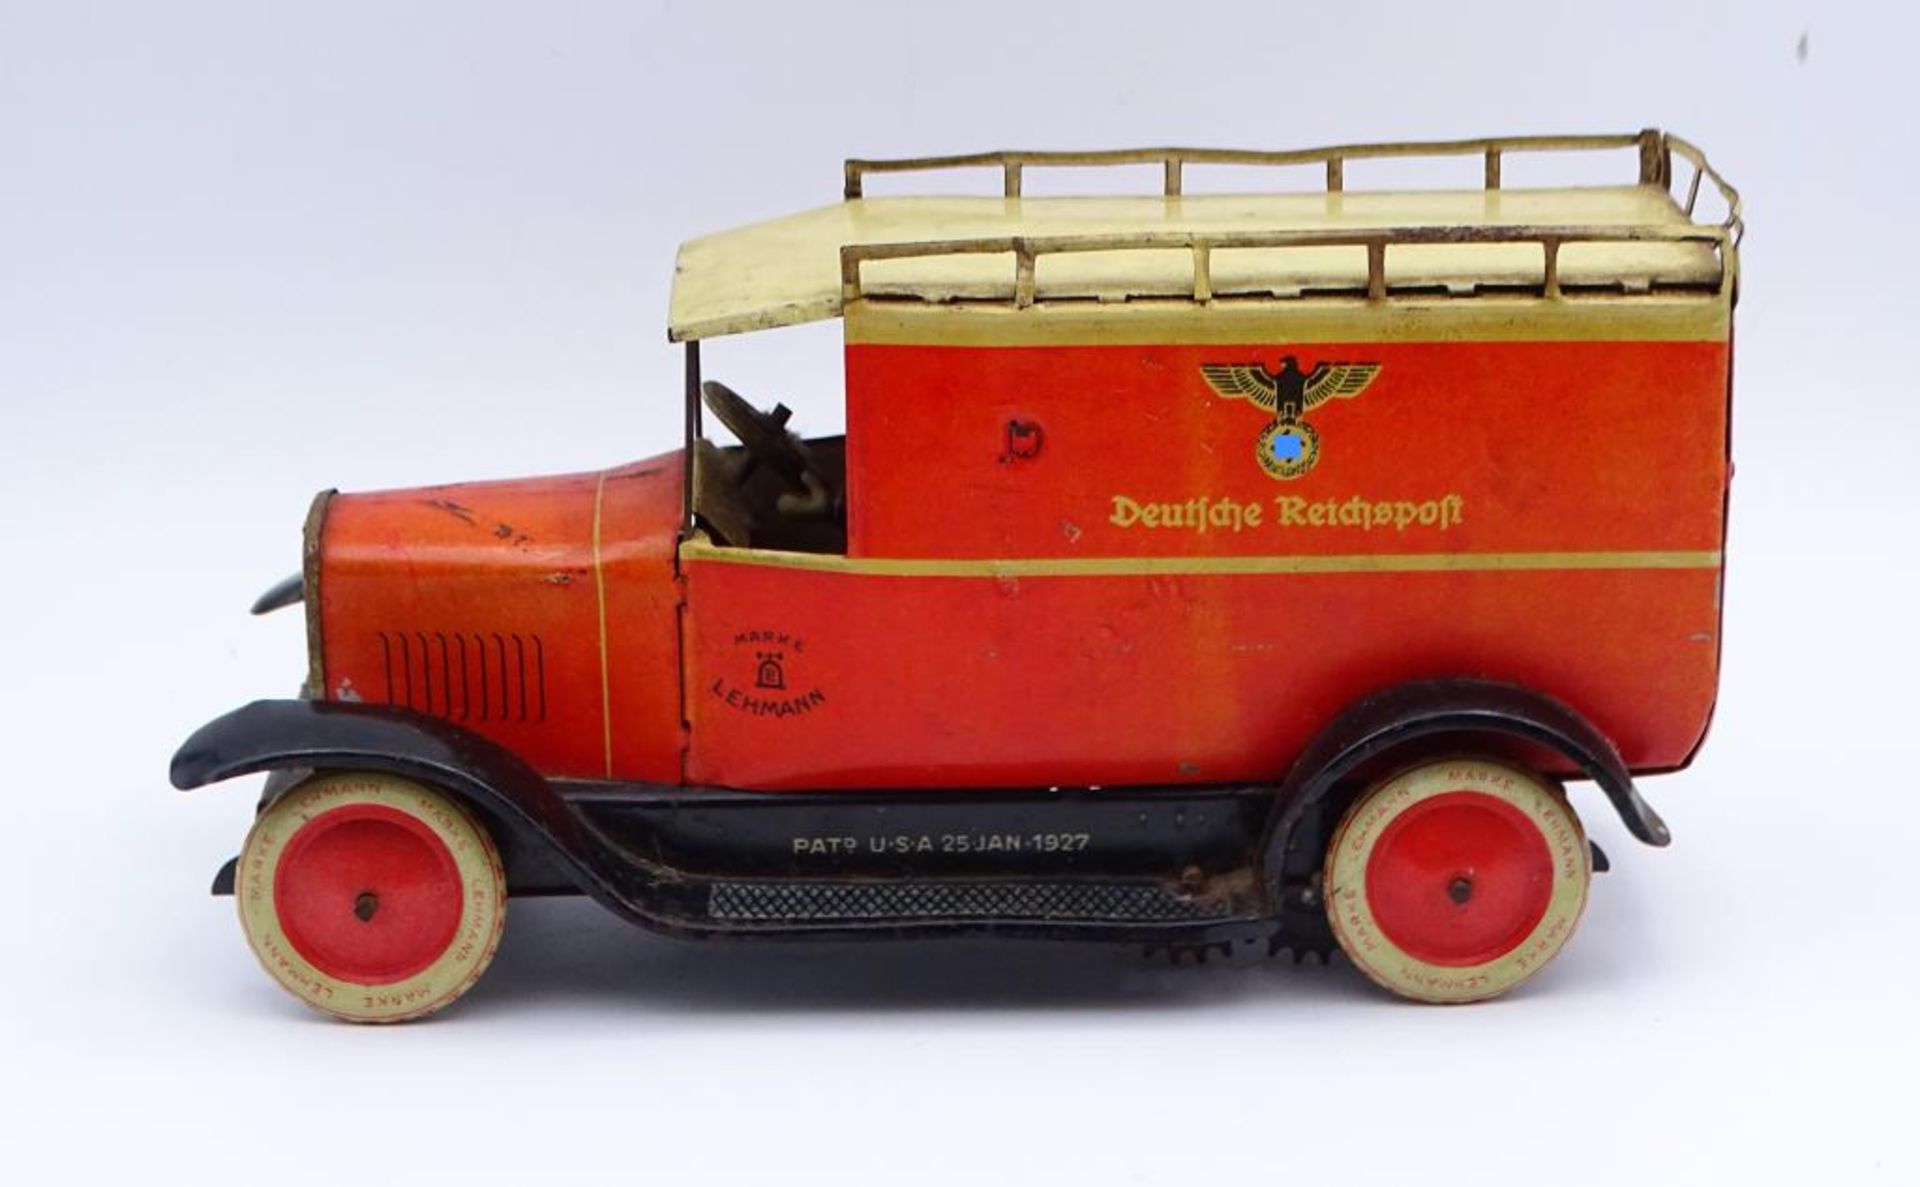 Blech-Postauto "DEUTSCHE REICHSPOST", Modell Nummer #786 mit Hoheitszeichen, Firma LEHMANN , mit